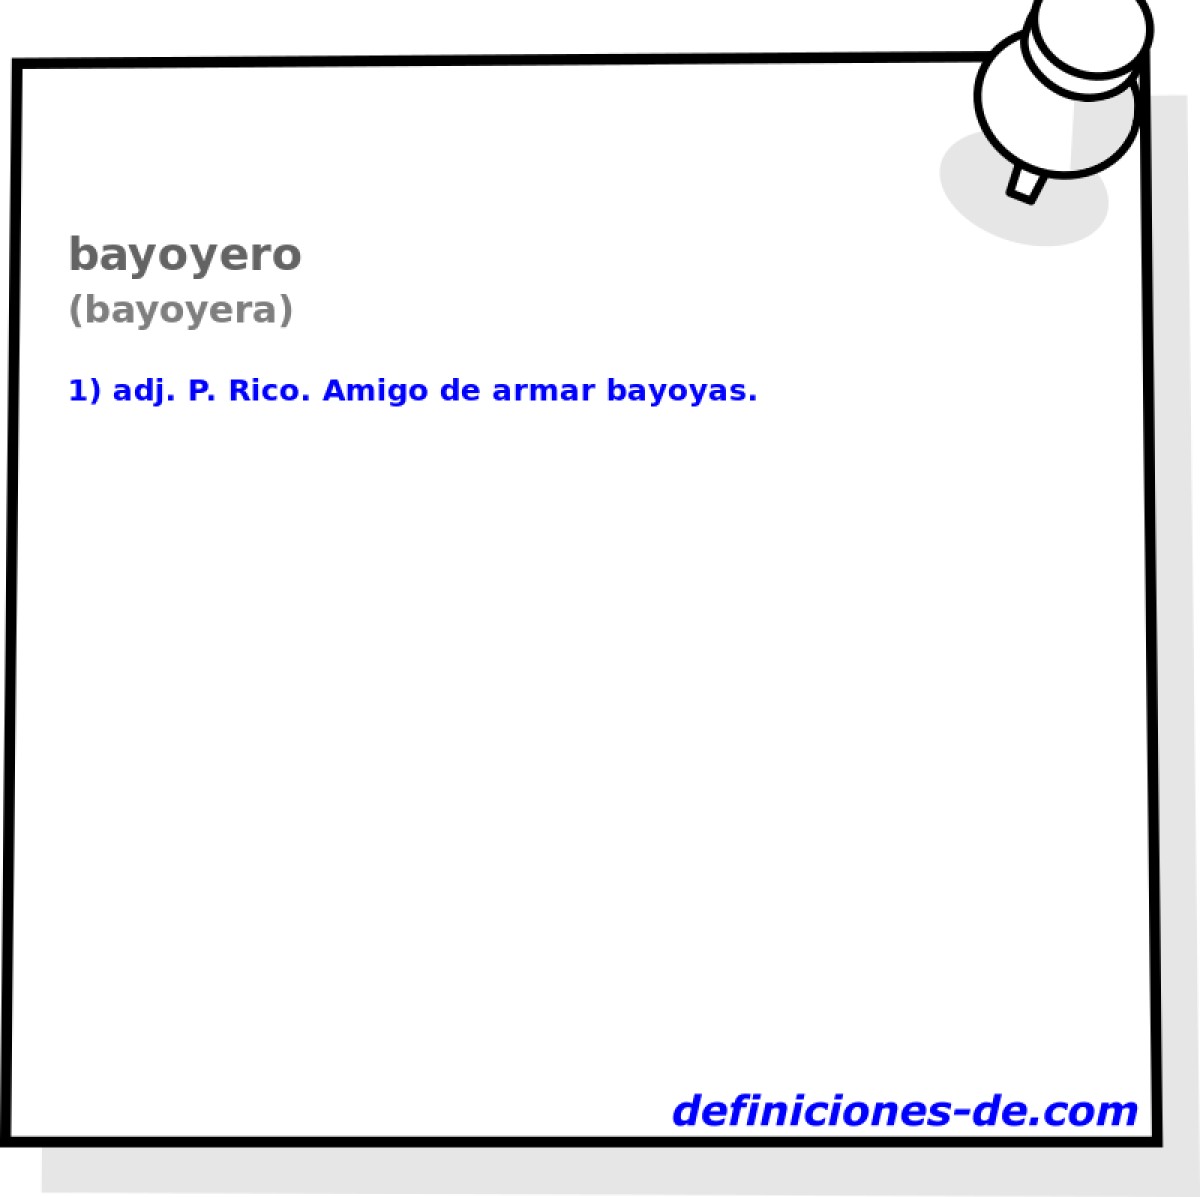 bayoyero (bayoyera)